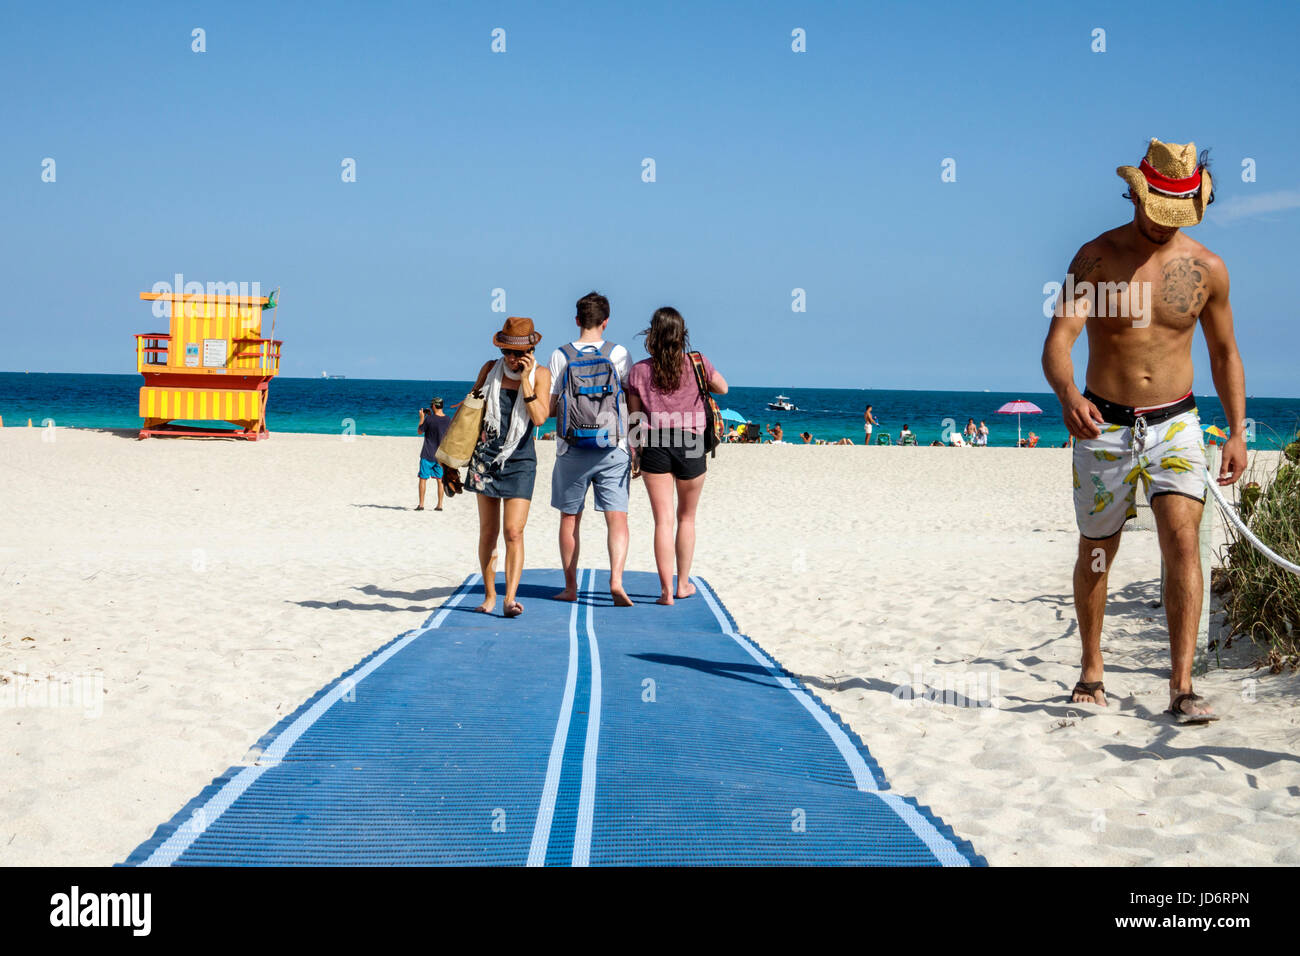 Miami Beach Floride, eau de l'océan Atlantique, sable, tapis d'accessibilité ADA, accès pour fauteuils roulants, adultes homme hommes, femme femme femme femme dame, marche, visito Banque D'Images